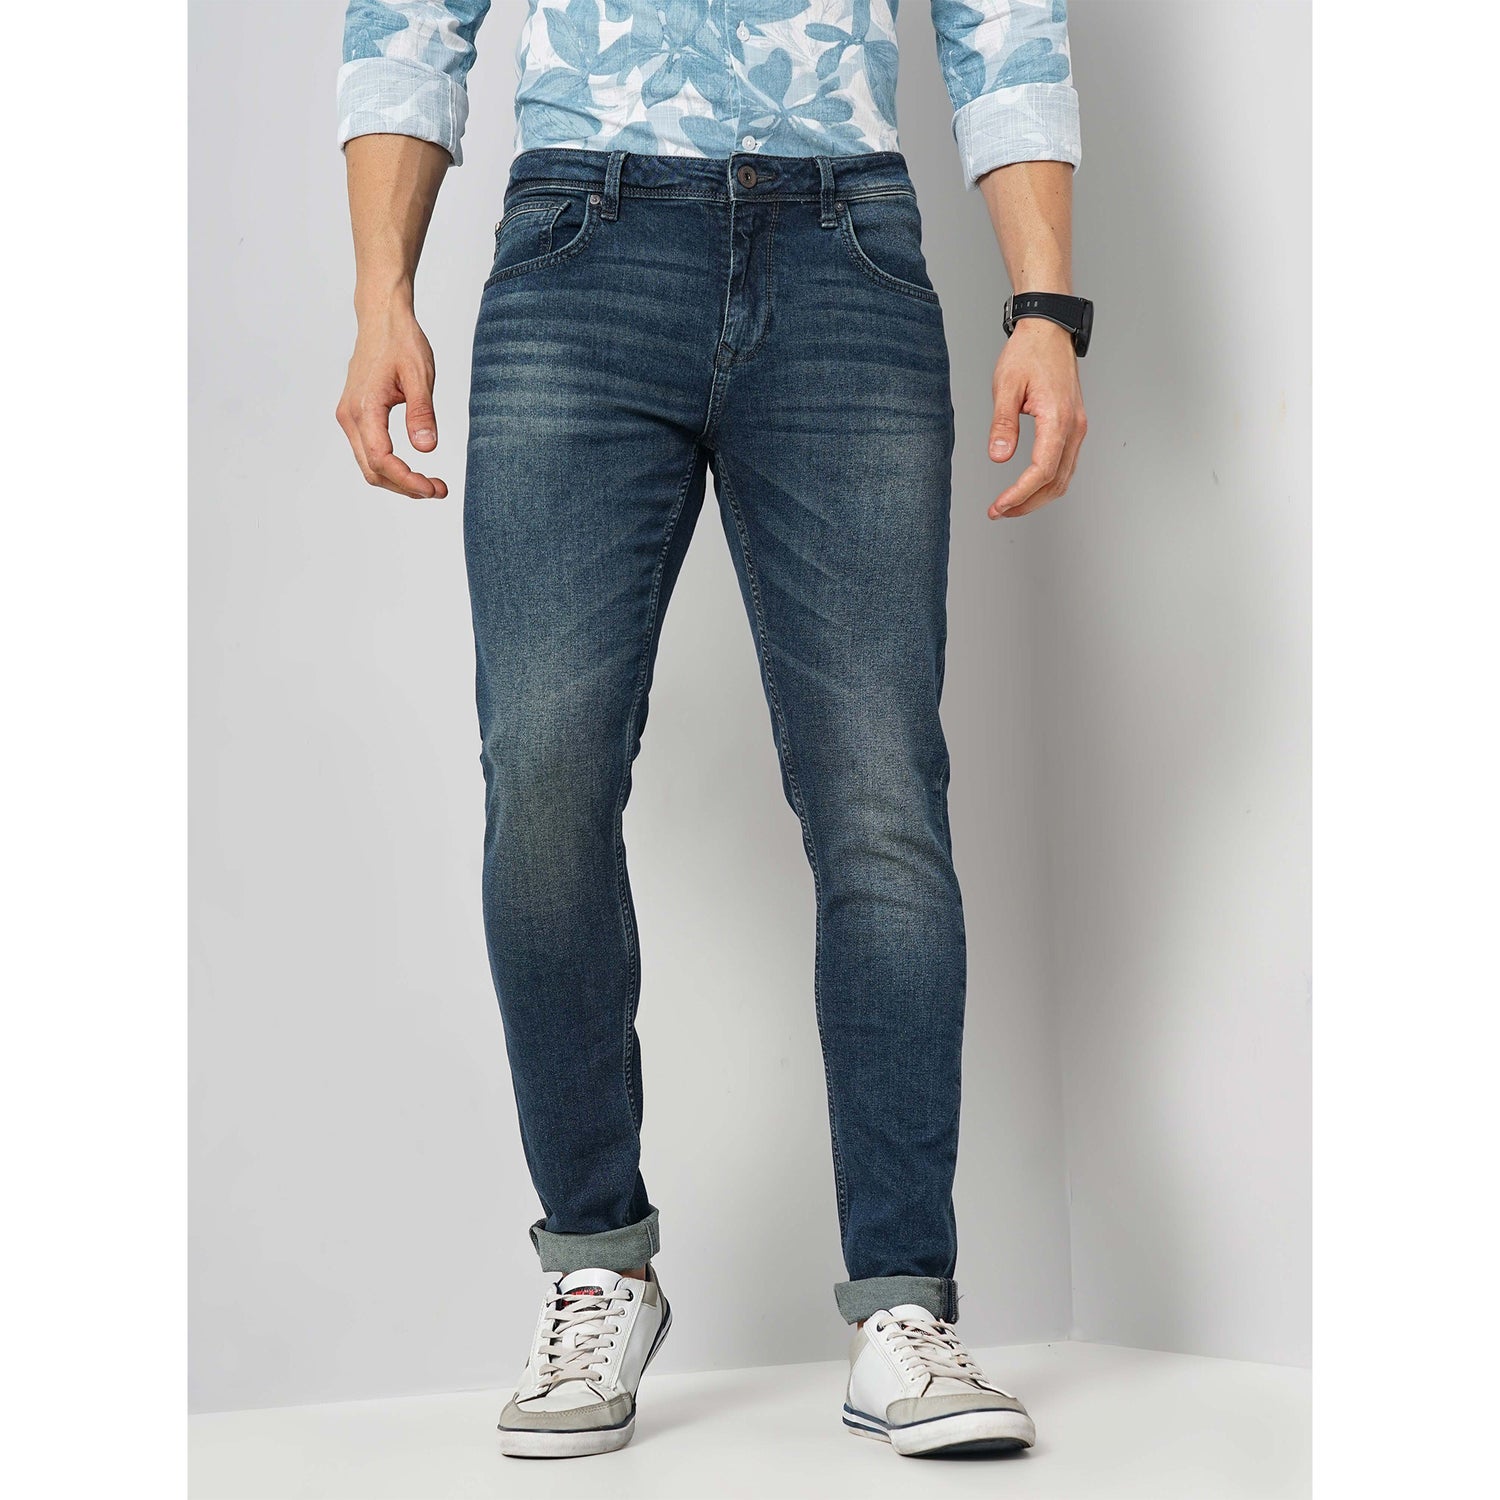 Men's Solid Blue Cotton-Blend Jeans (COECOBEN145)